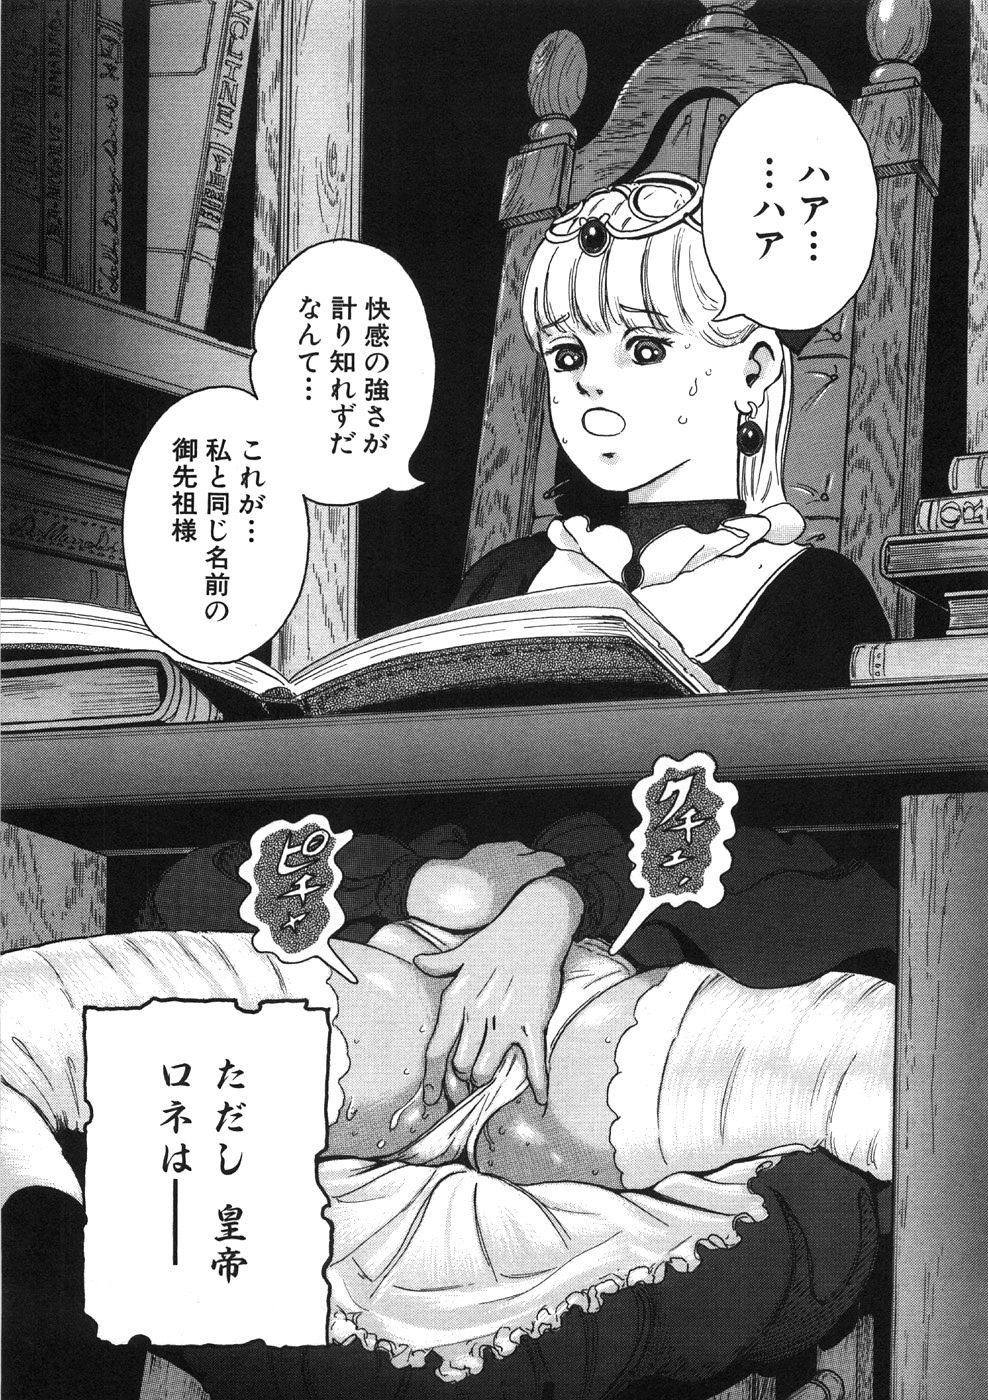 [Yasuhiko Ohtsuki] [ootsuki ho hiko] Rone no Nikki page 17 full